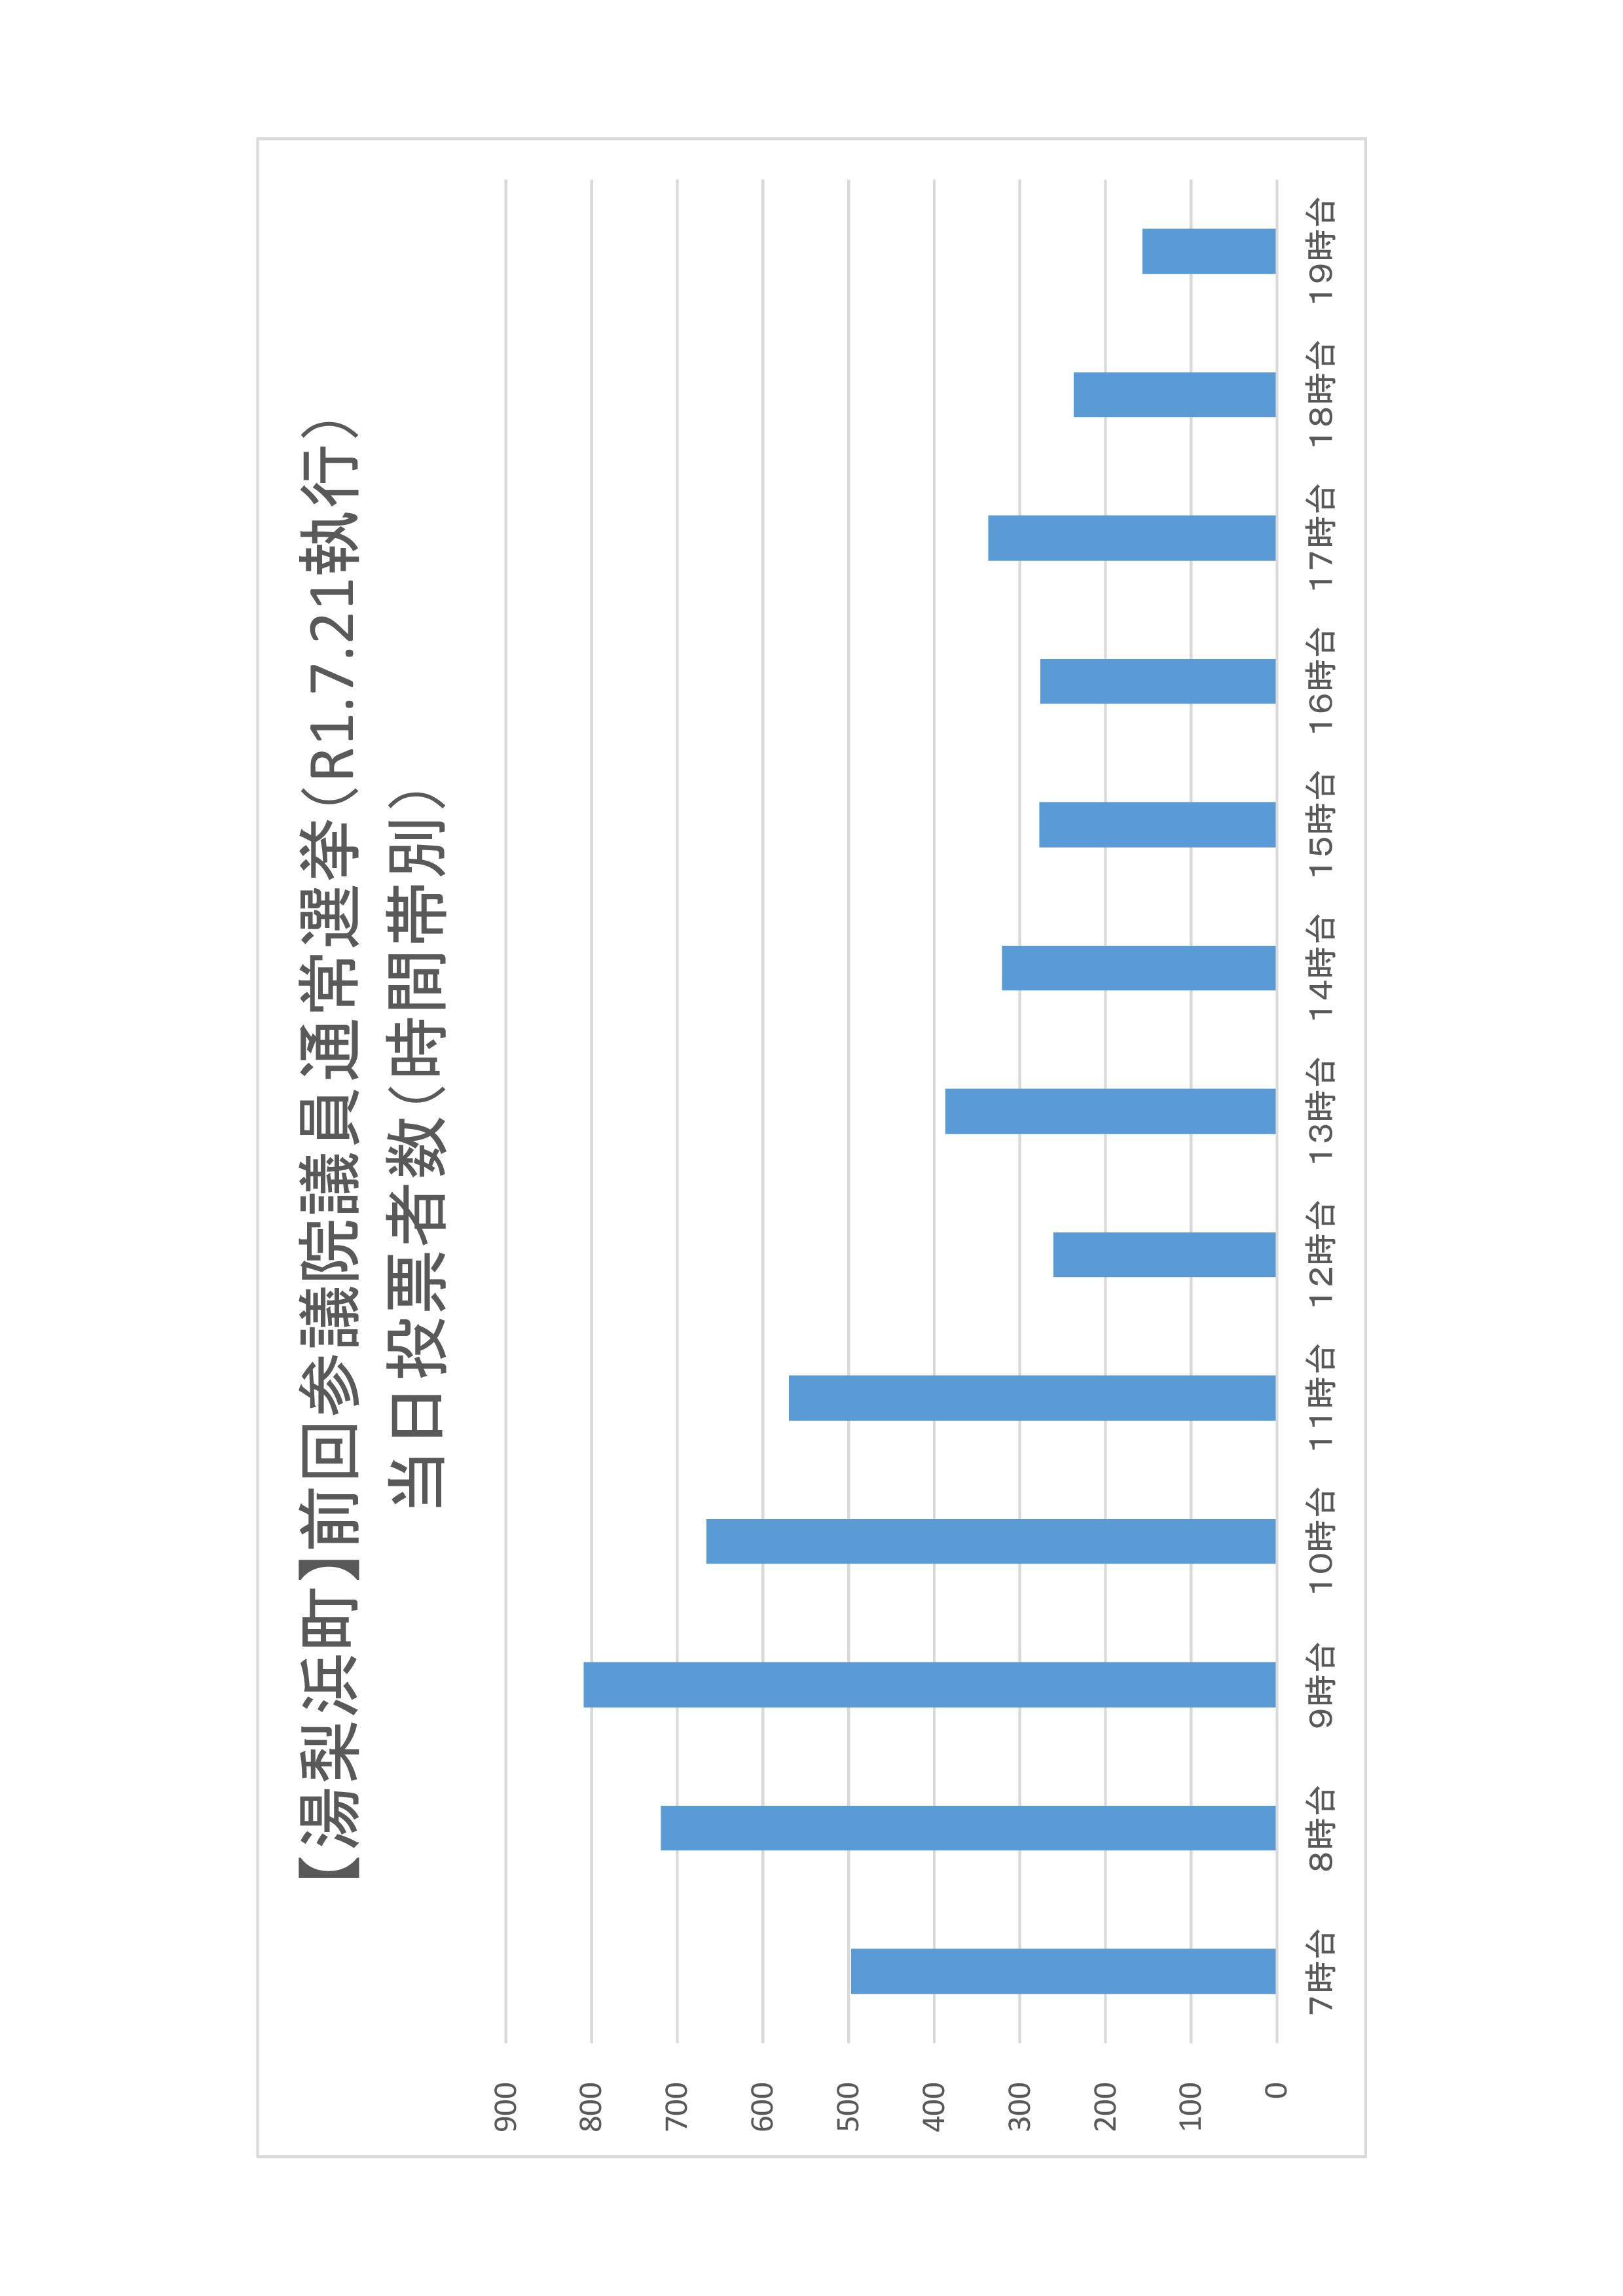 湯梨浜町の時間帯別当日投票者数のグラフ